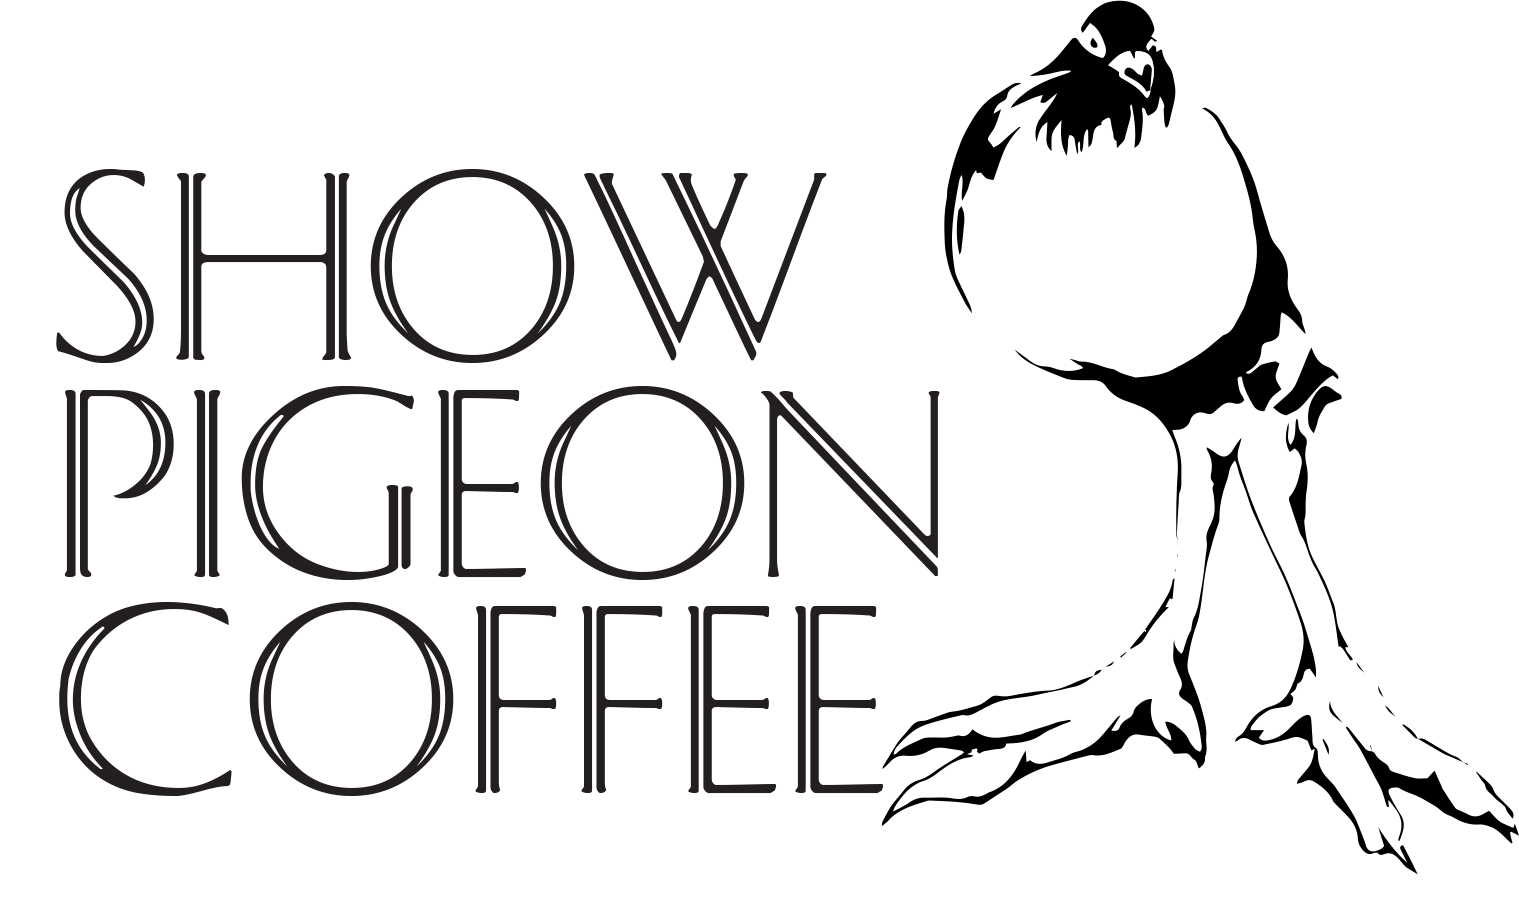 Show Pigeon Coffee